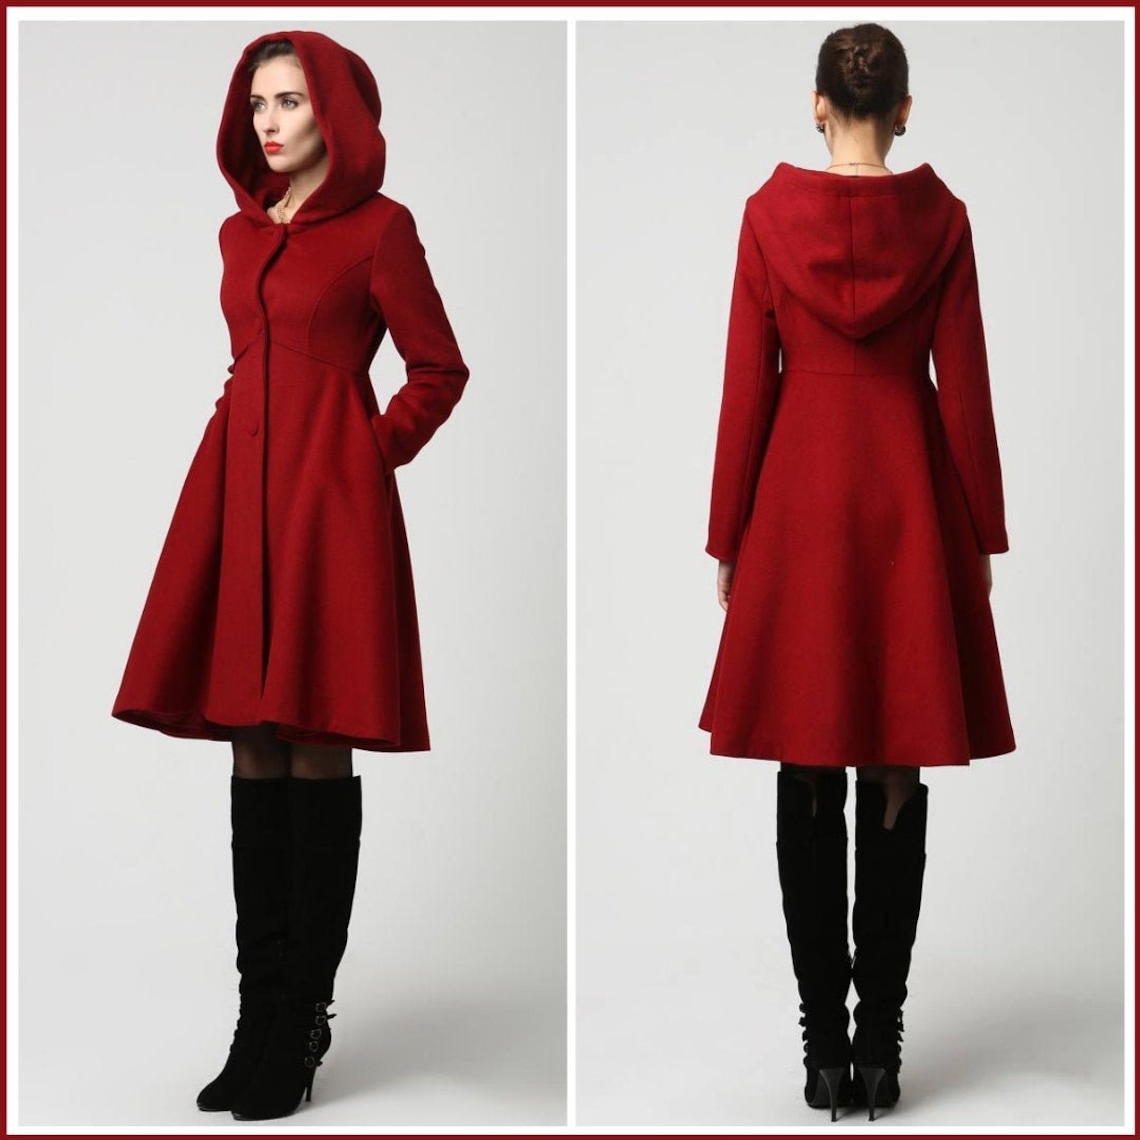 Women's Winter Single breasted wool Coat red swing hooded | Etsy